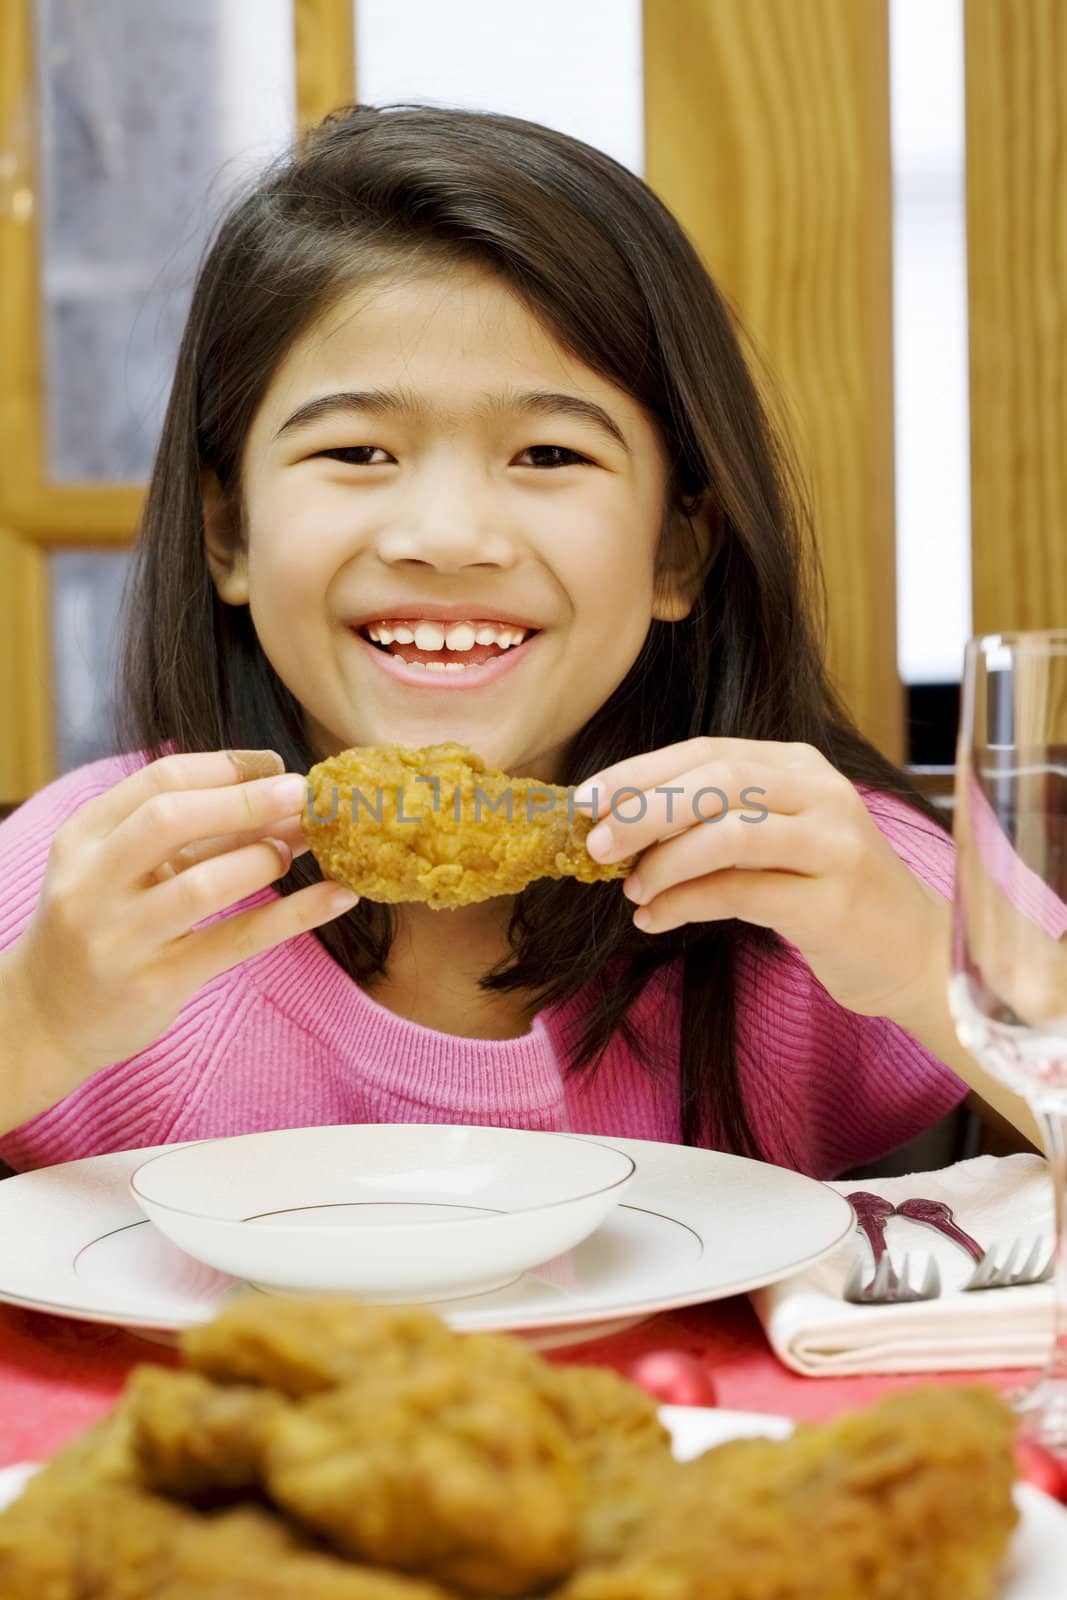 girl eating fried chicken drumstick by jarenwicklund